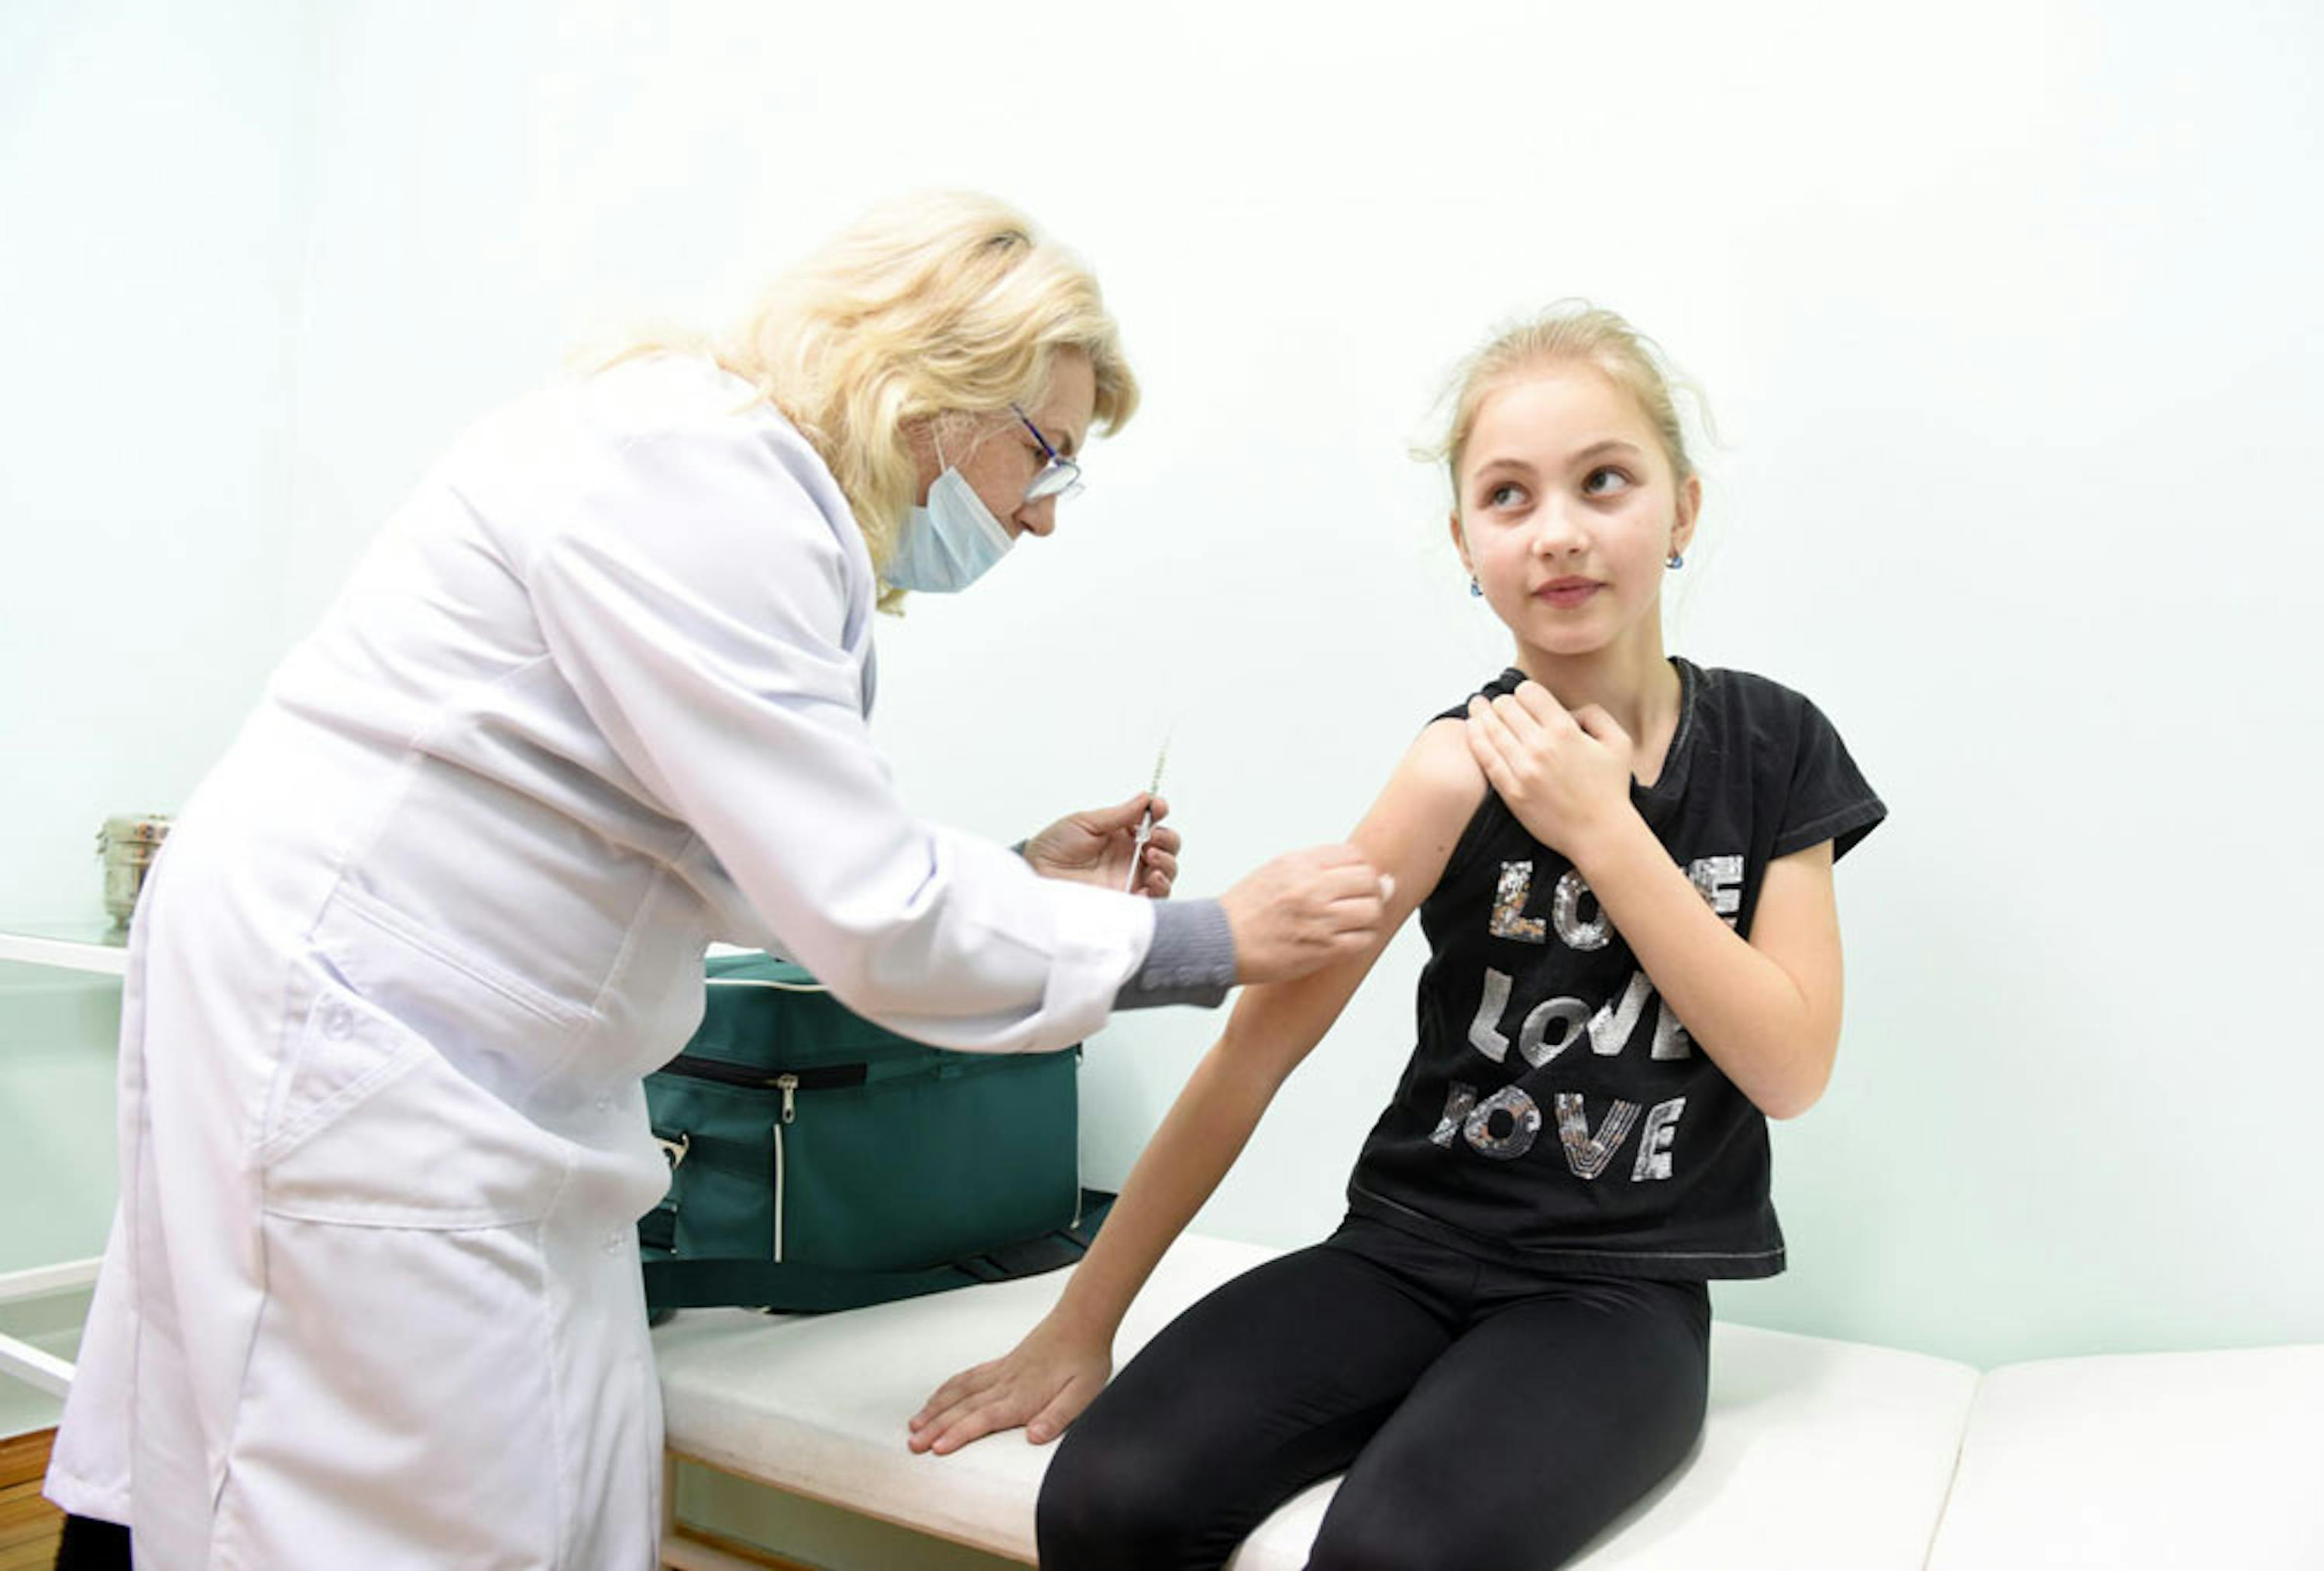 Maryana, 9 anni, riceve la prima vaccinazione contro il morbillo della sua vita nell'ambulatorio della sua scuola, nel villaggio di Lapaivka, Ucraina orientale - ©UNICEF/UN0284080/Dyachyshyn